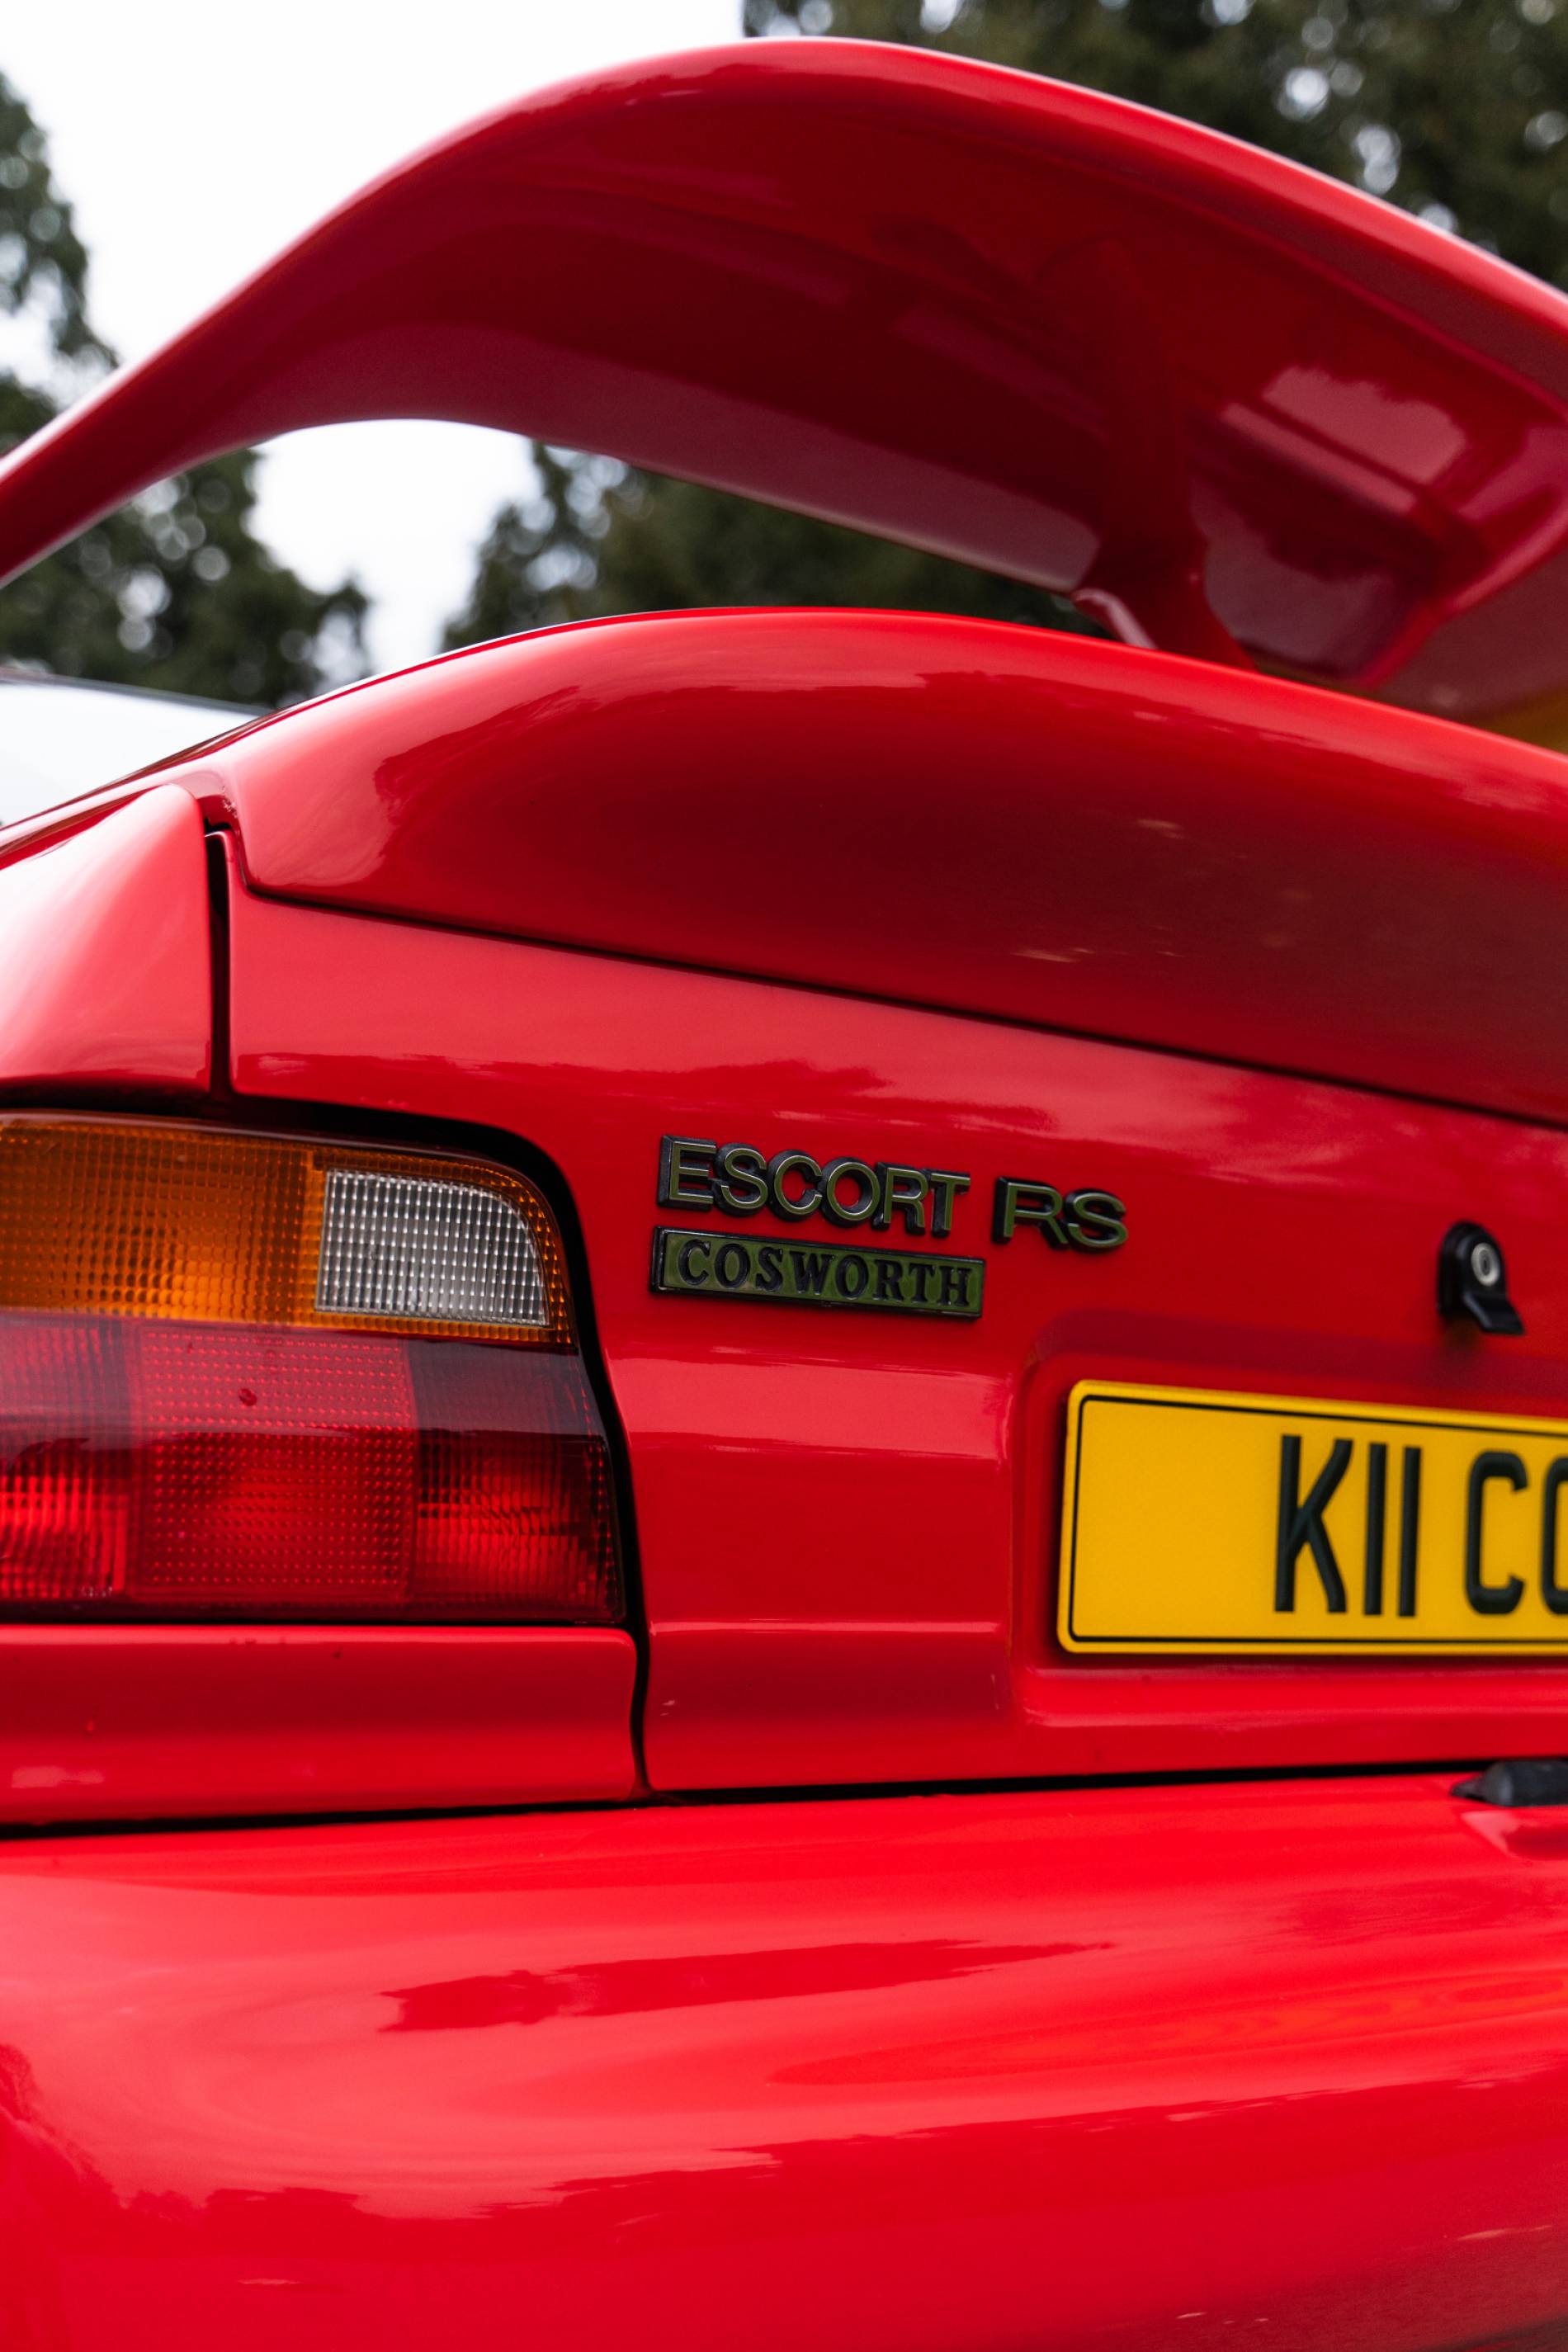 480HP Escort Cosworth &amp; £1000